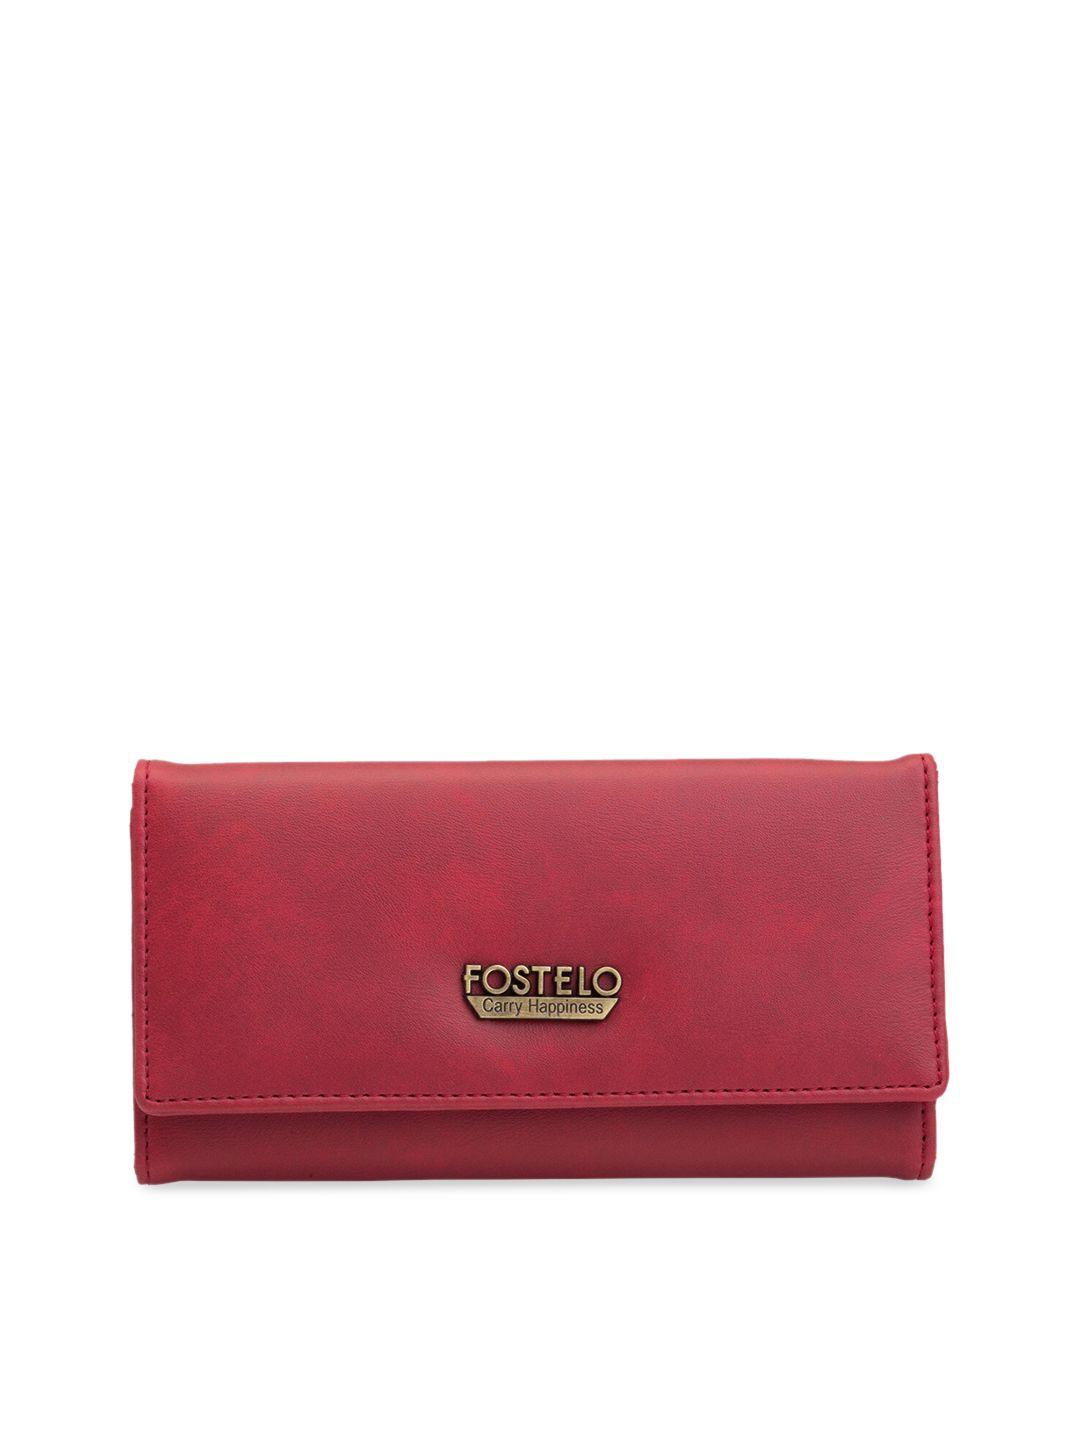 fostelo women red solid two fold wallet